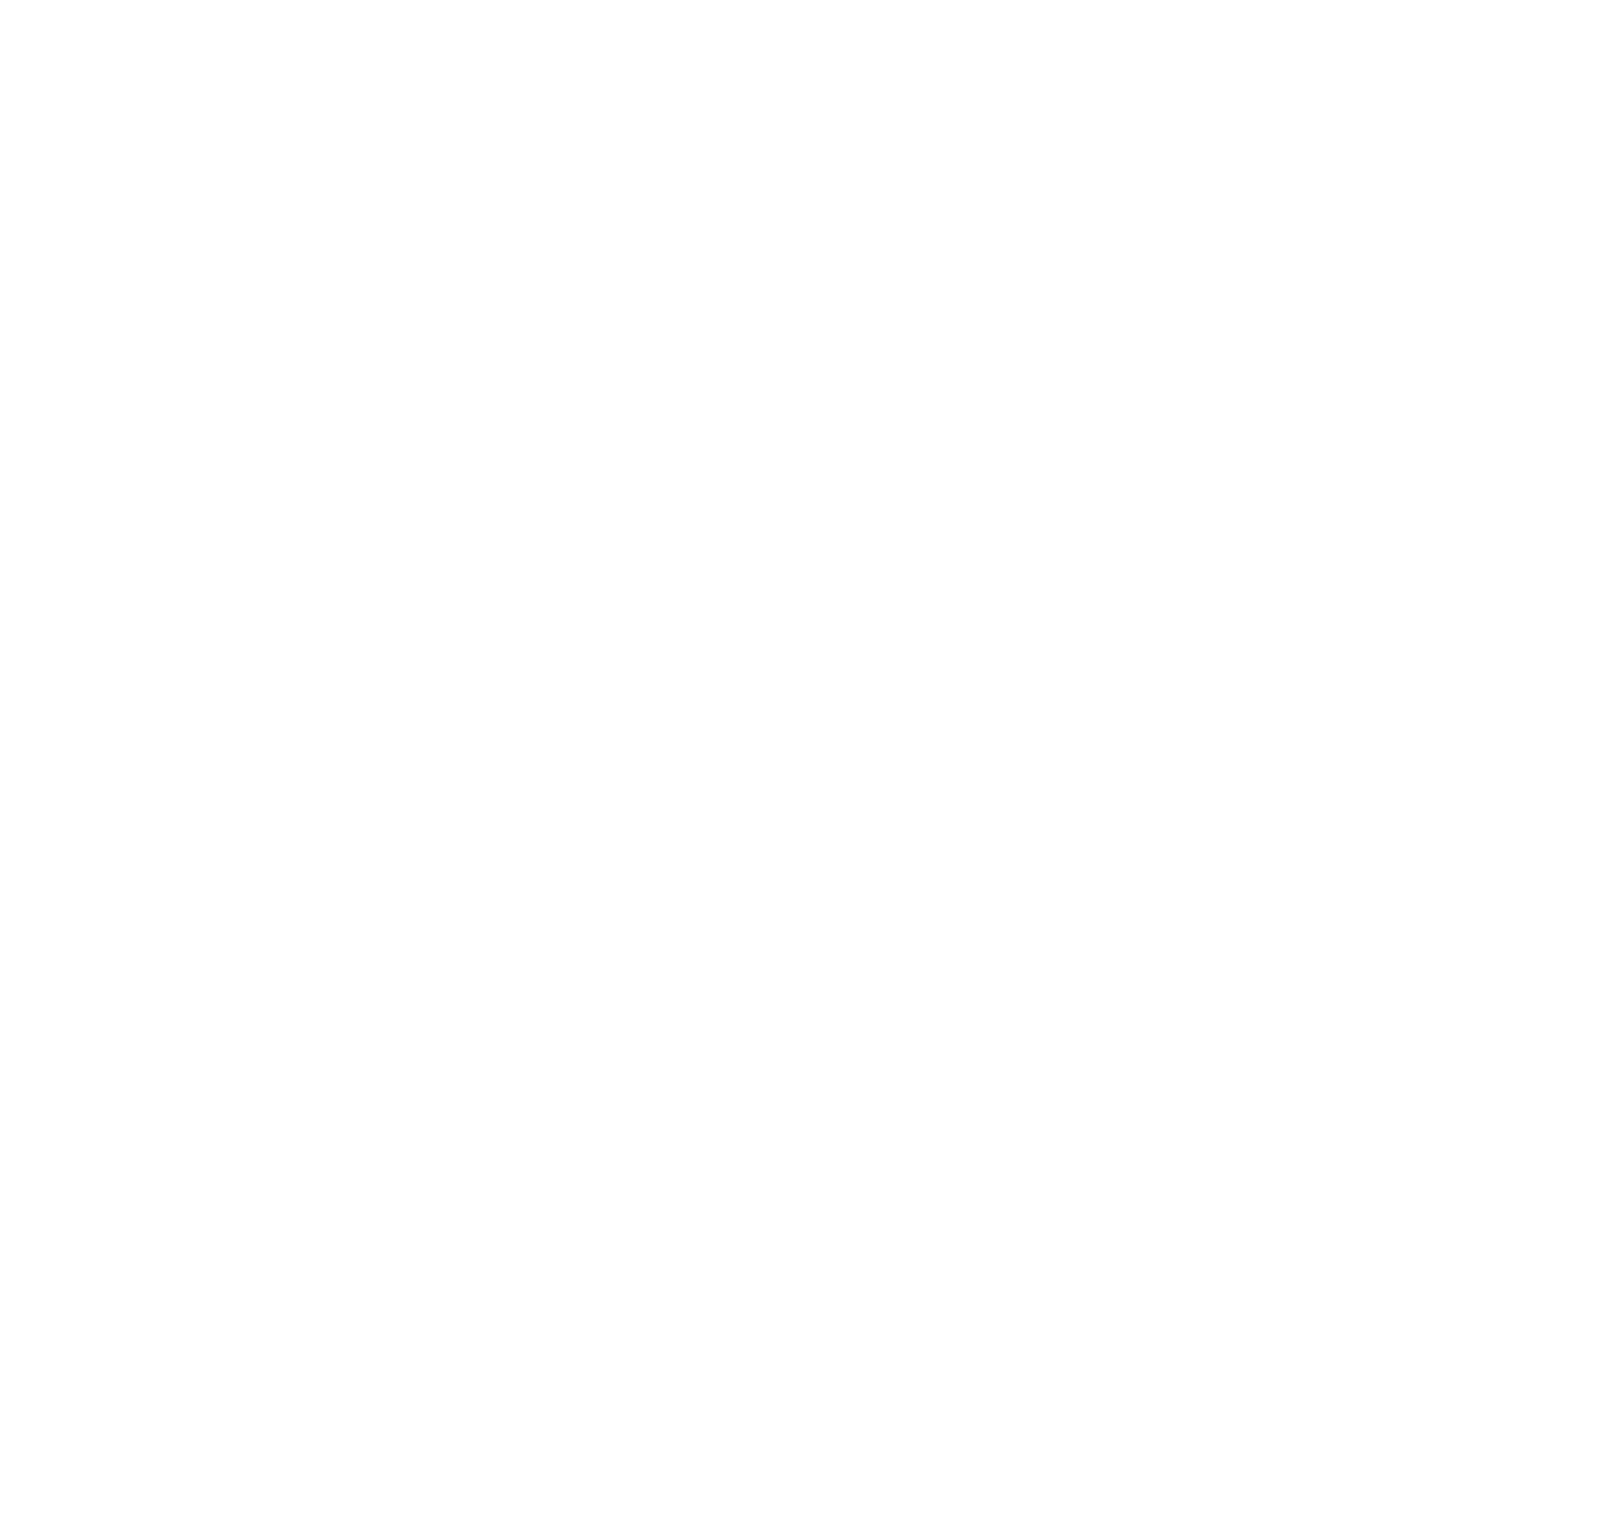 SOC Telemed logo for dark backgrounds (transparent PNG)